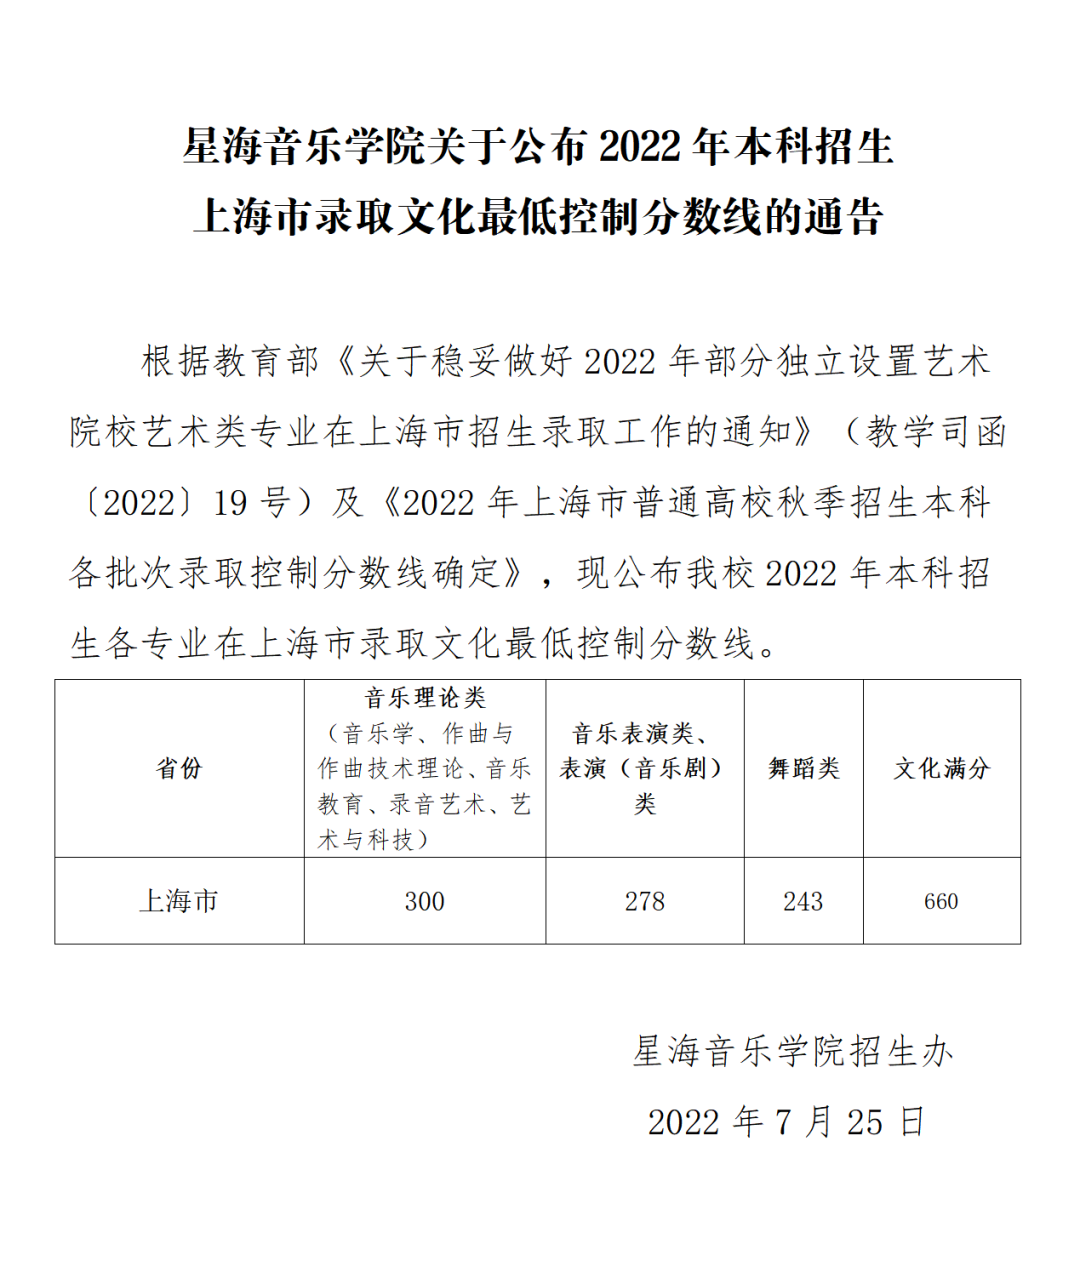 星海音乐学院关于公布2022年本科招生上海市音乐、舞蹈类专业录取文化最低控制分数线的通告